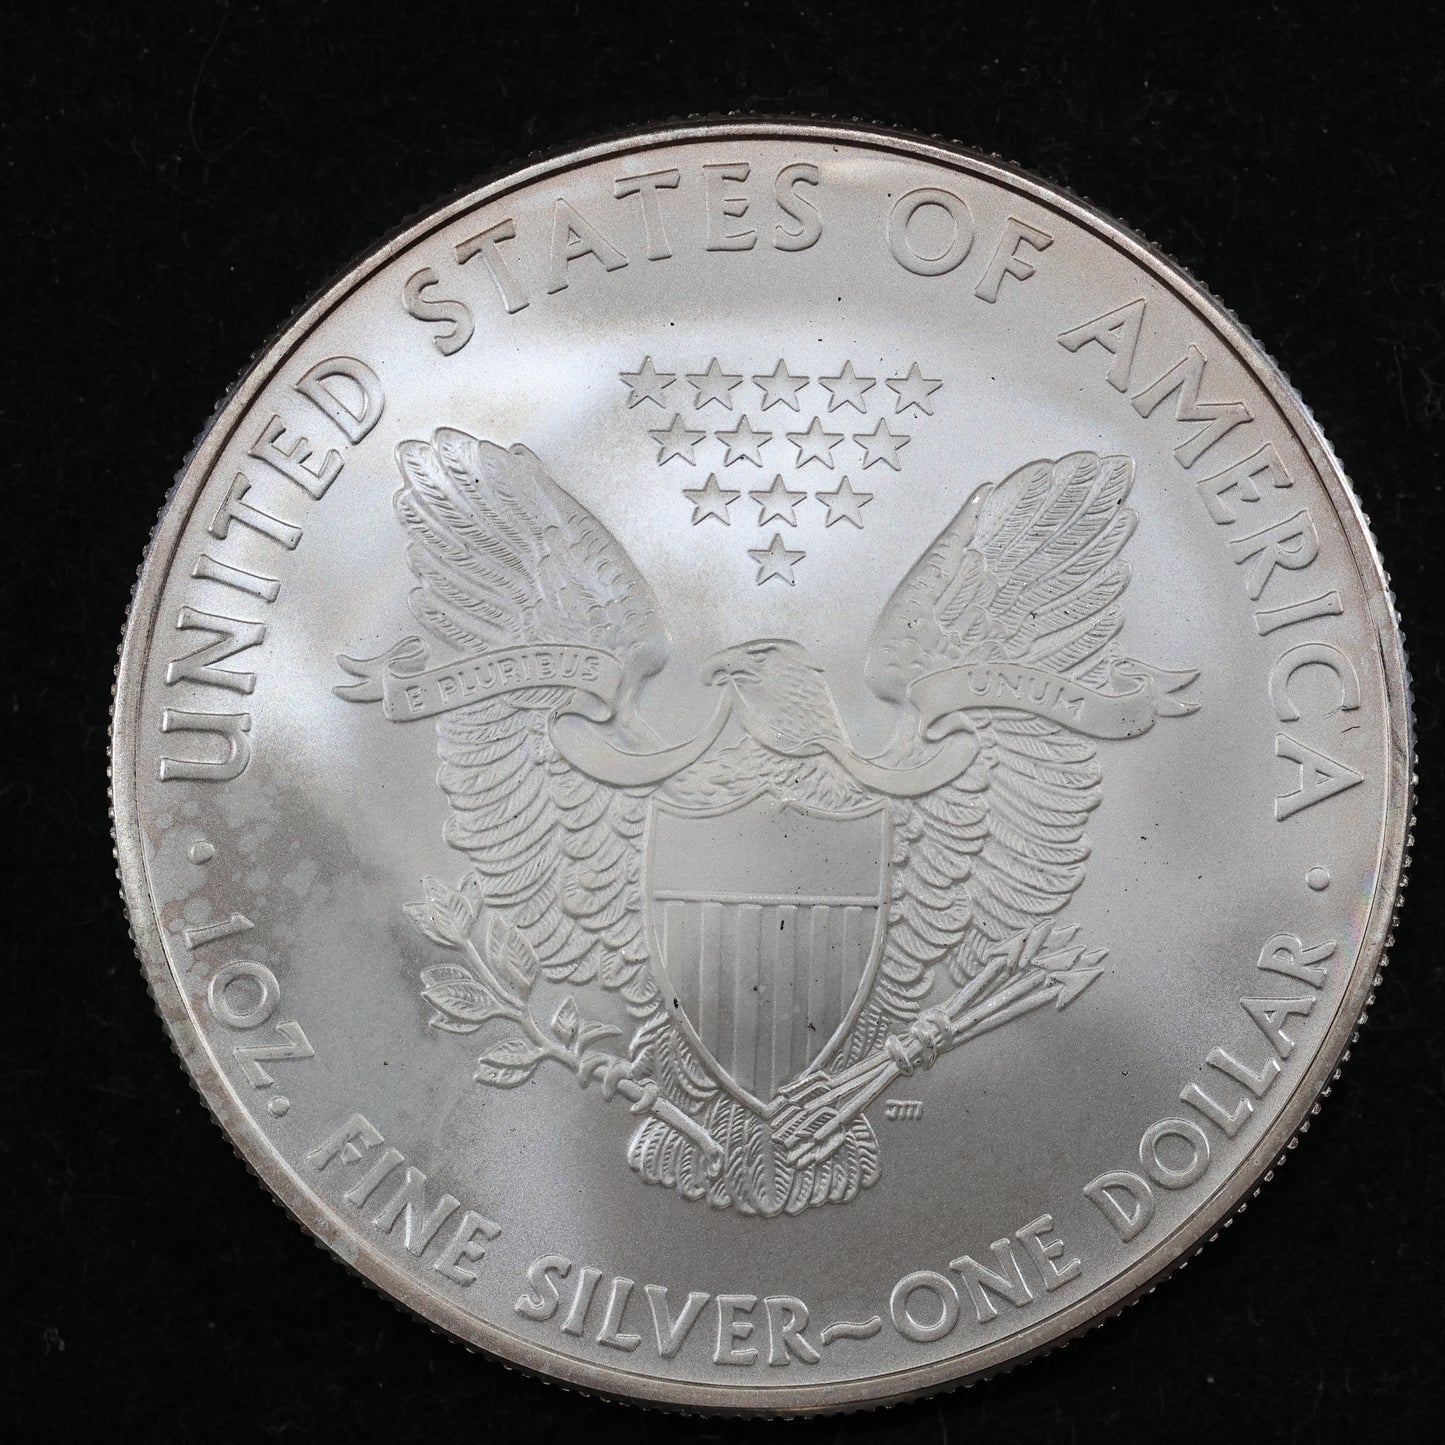 2010 American Silver Eagle 1 Oz .999 Fine Silver Coin Marks/Spots